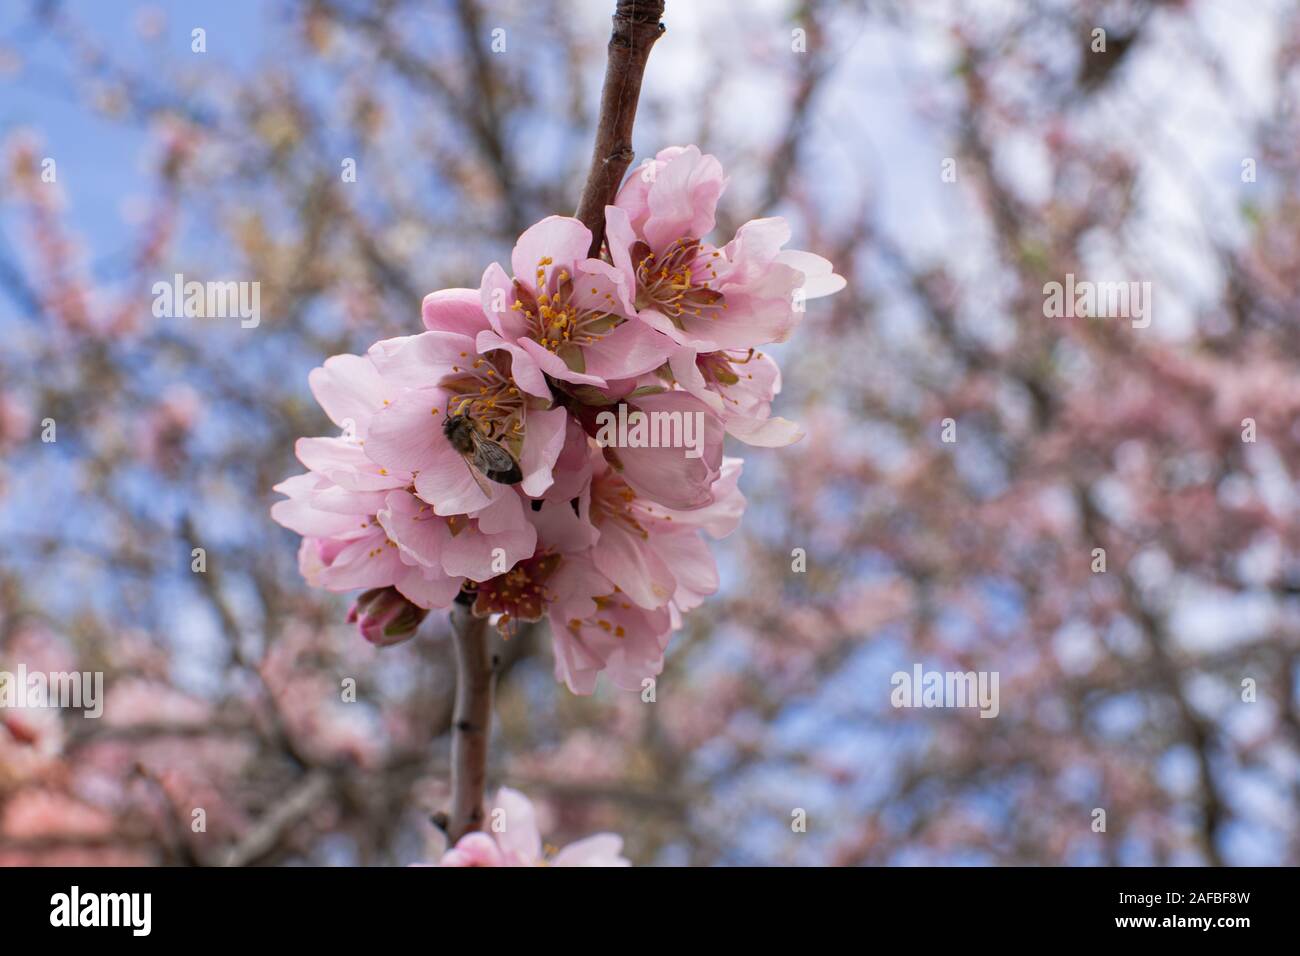 L'abeille européenne (Apis mellifera) pollinisent la fleur d'amande (Prunus dulcis) Banque D'Images